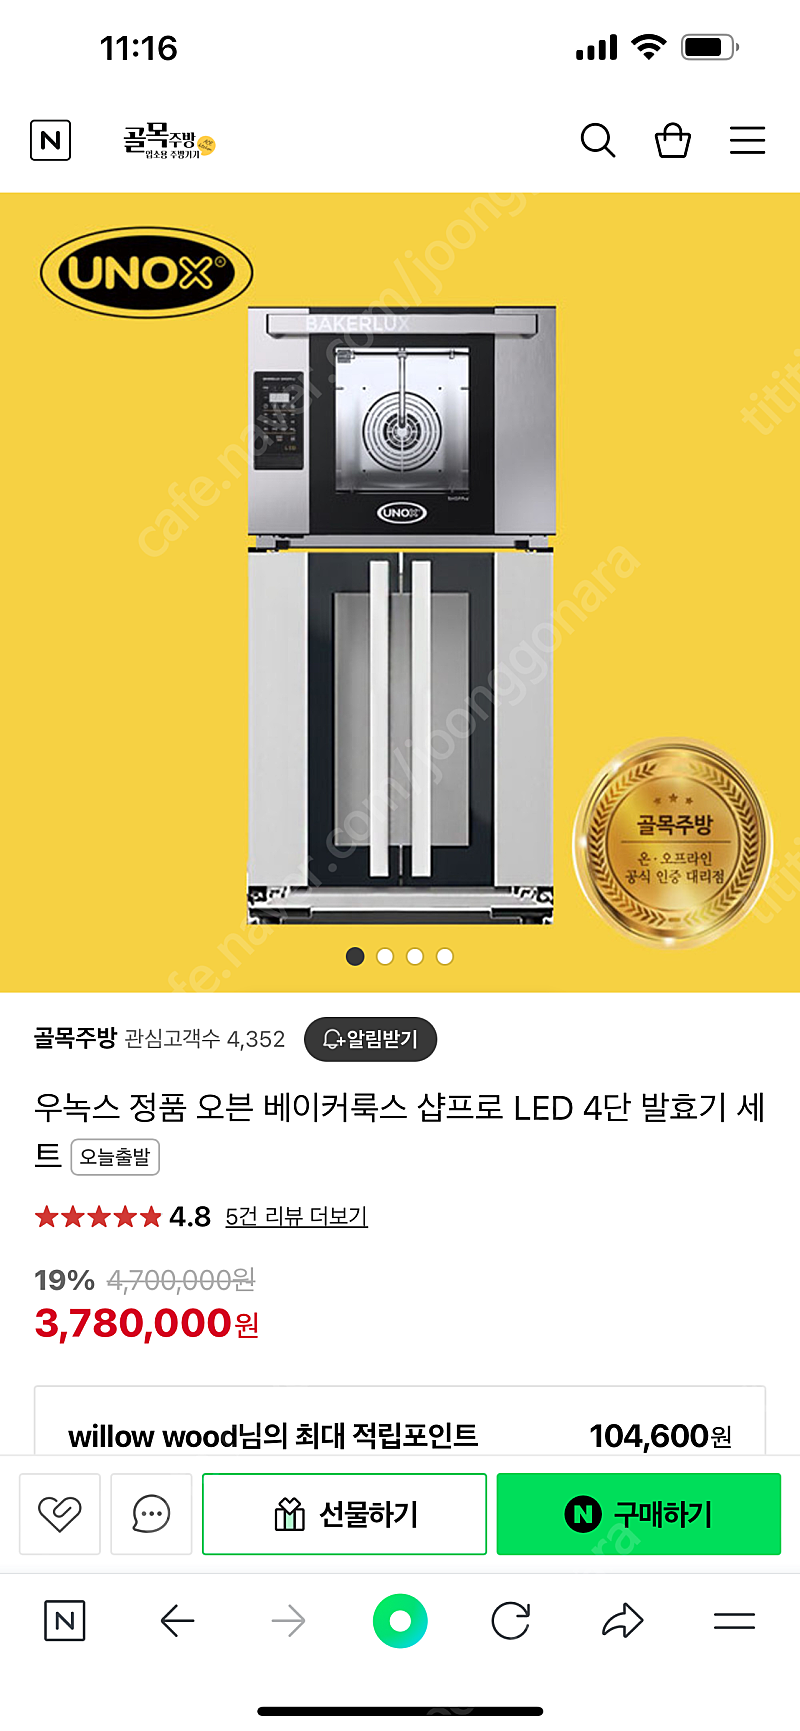 우녹스 샵프로 led 4단 + 정품 발효기